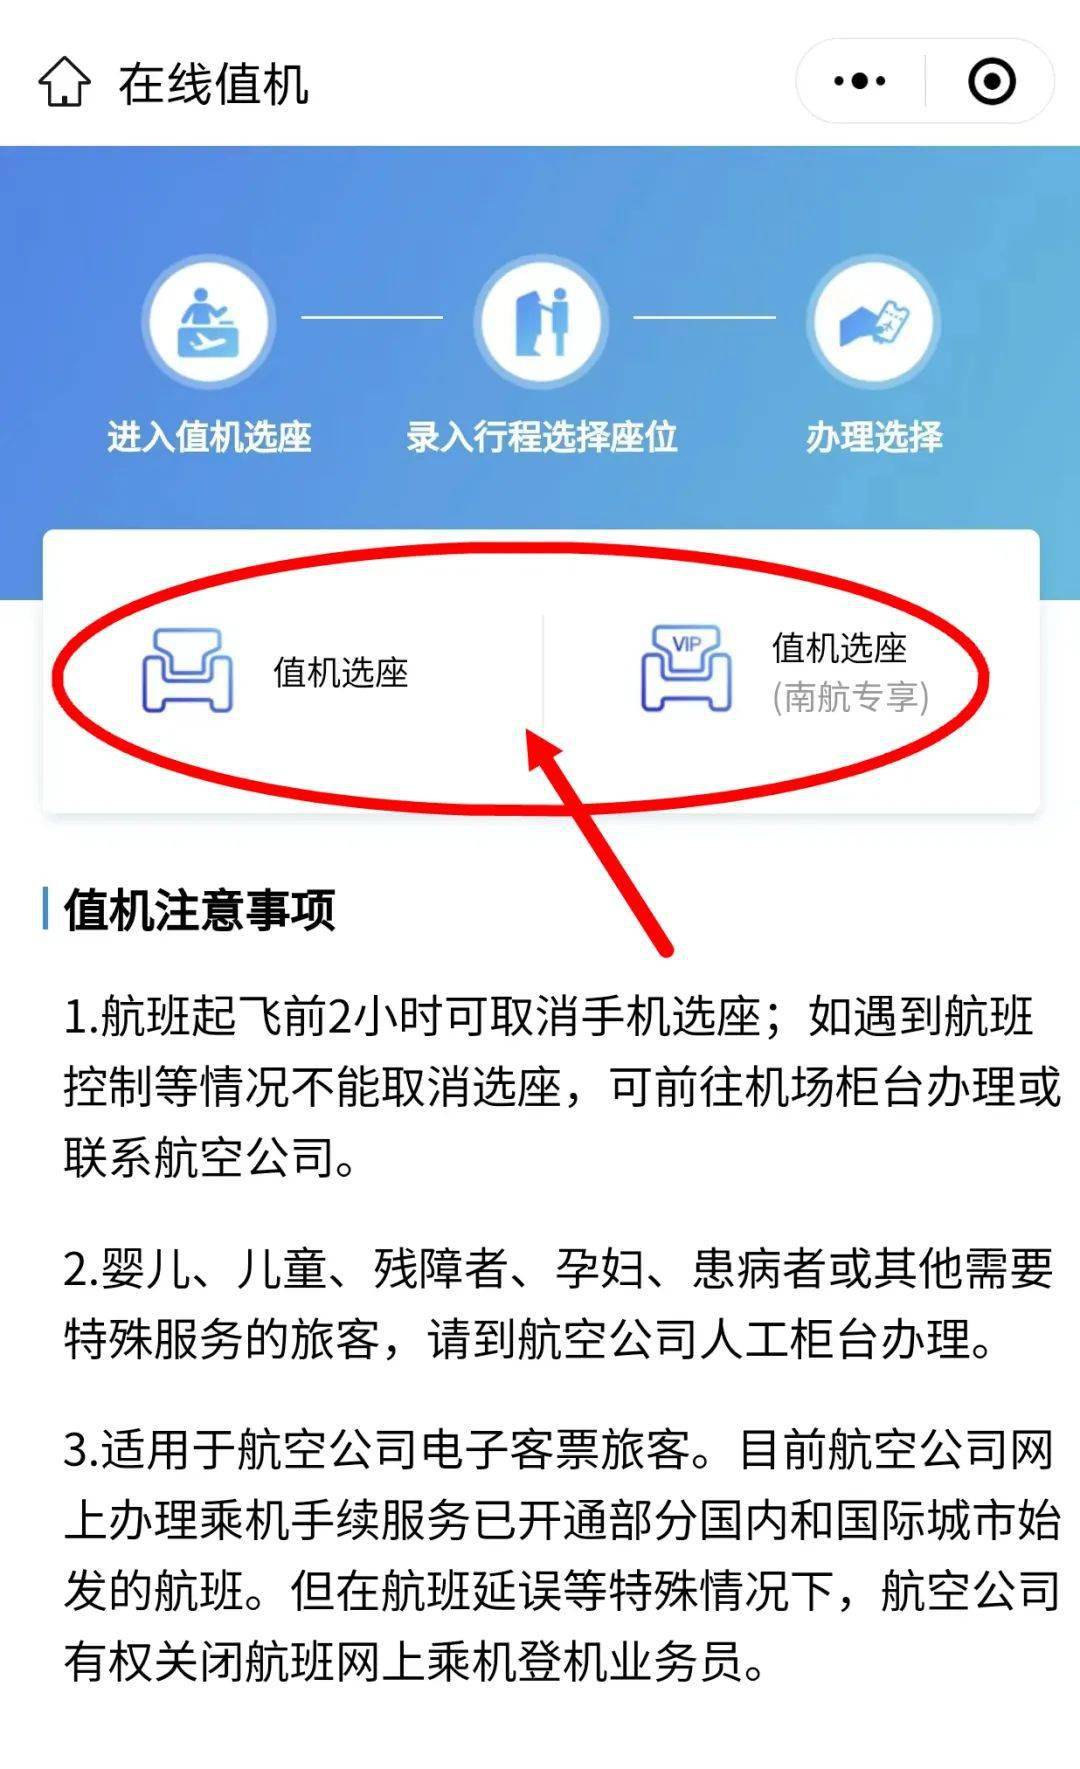 步骤来了即可生成电子登机牌在重庆飞微信公众号上办理网上